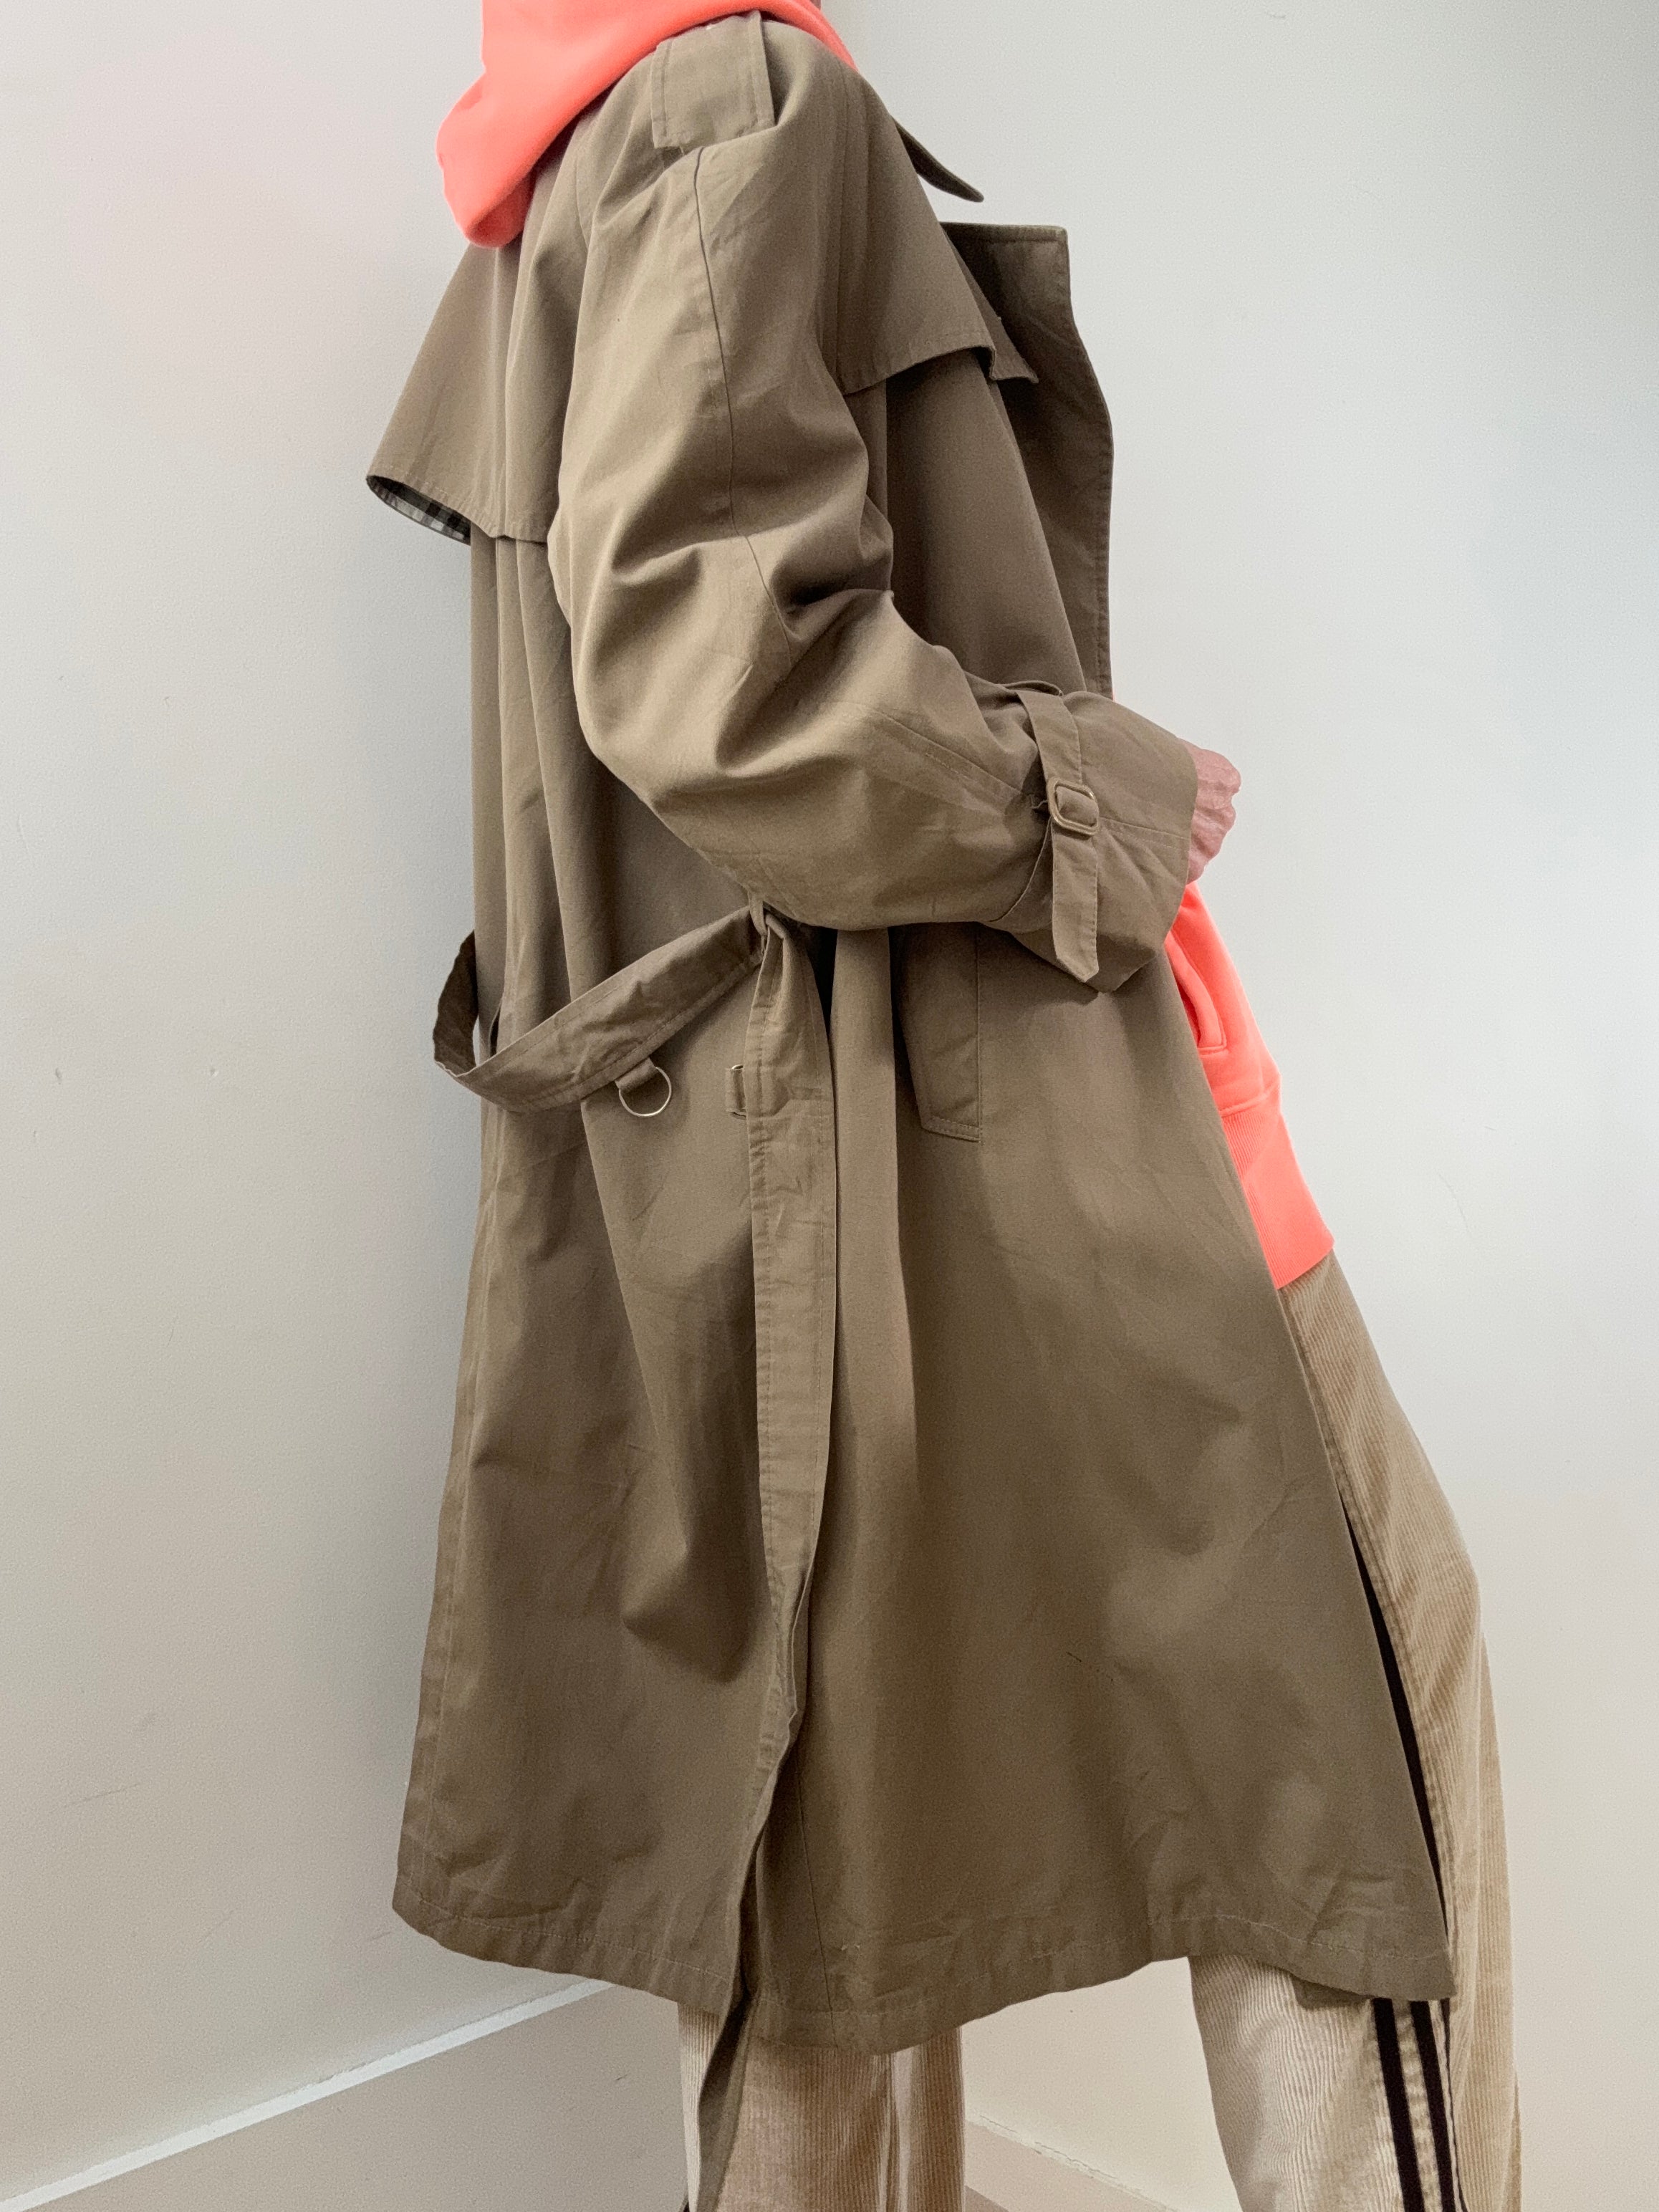 Future Nomads Coats Large - XLarge Vintage Tan Burberry Trenchcoat